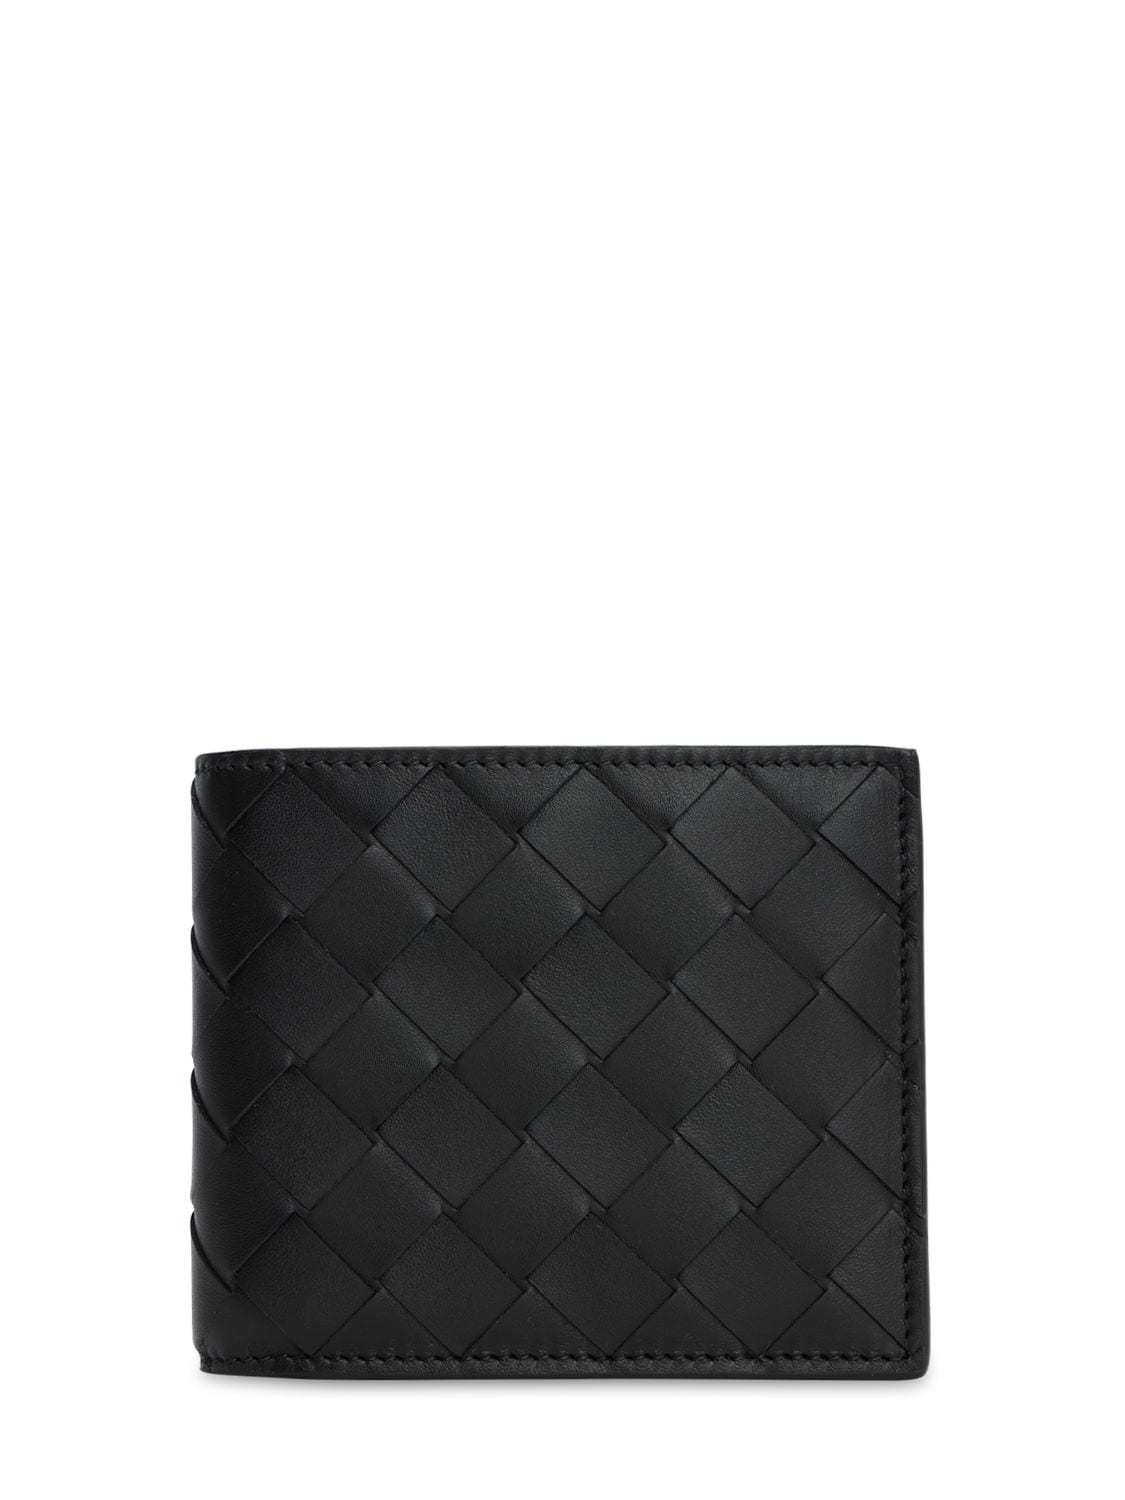 Bottega Veneta Intrecciato Rubber And Leather Billfold Wallet In Black